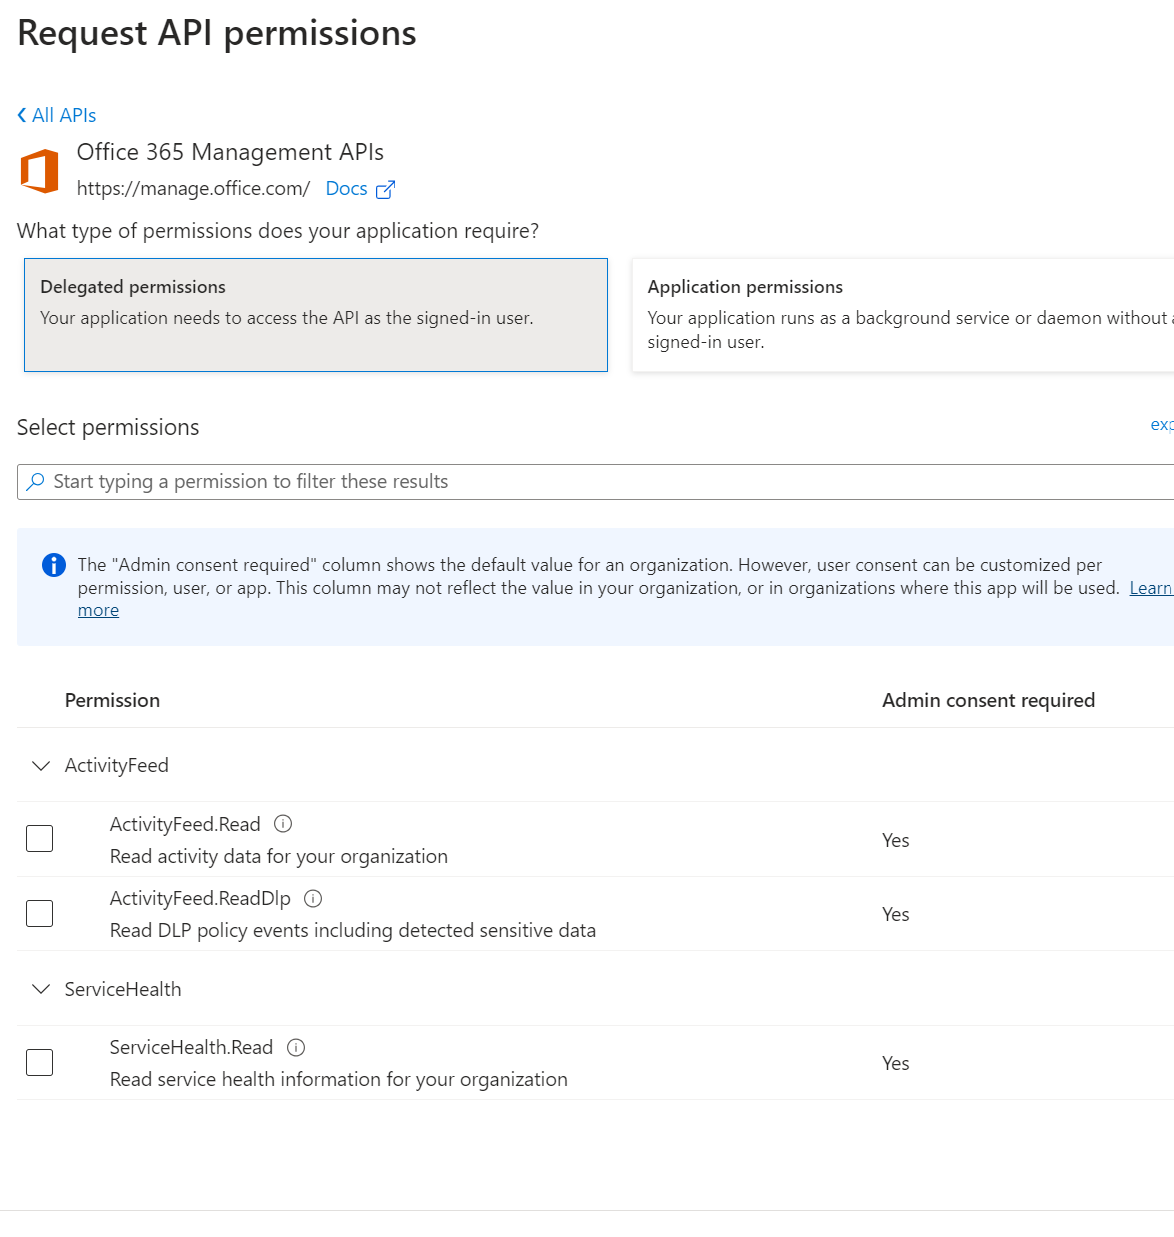 Office 365 Management APIs Permissions